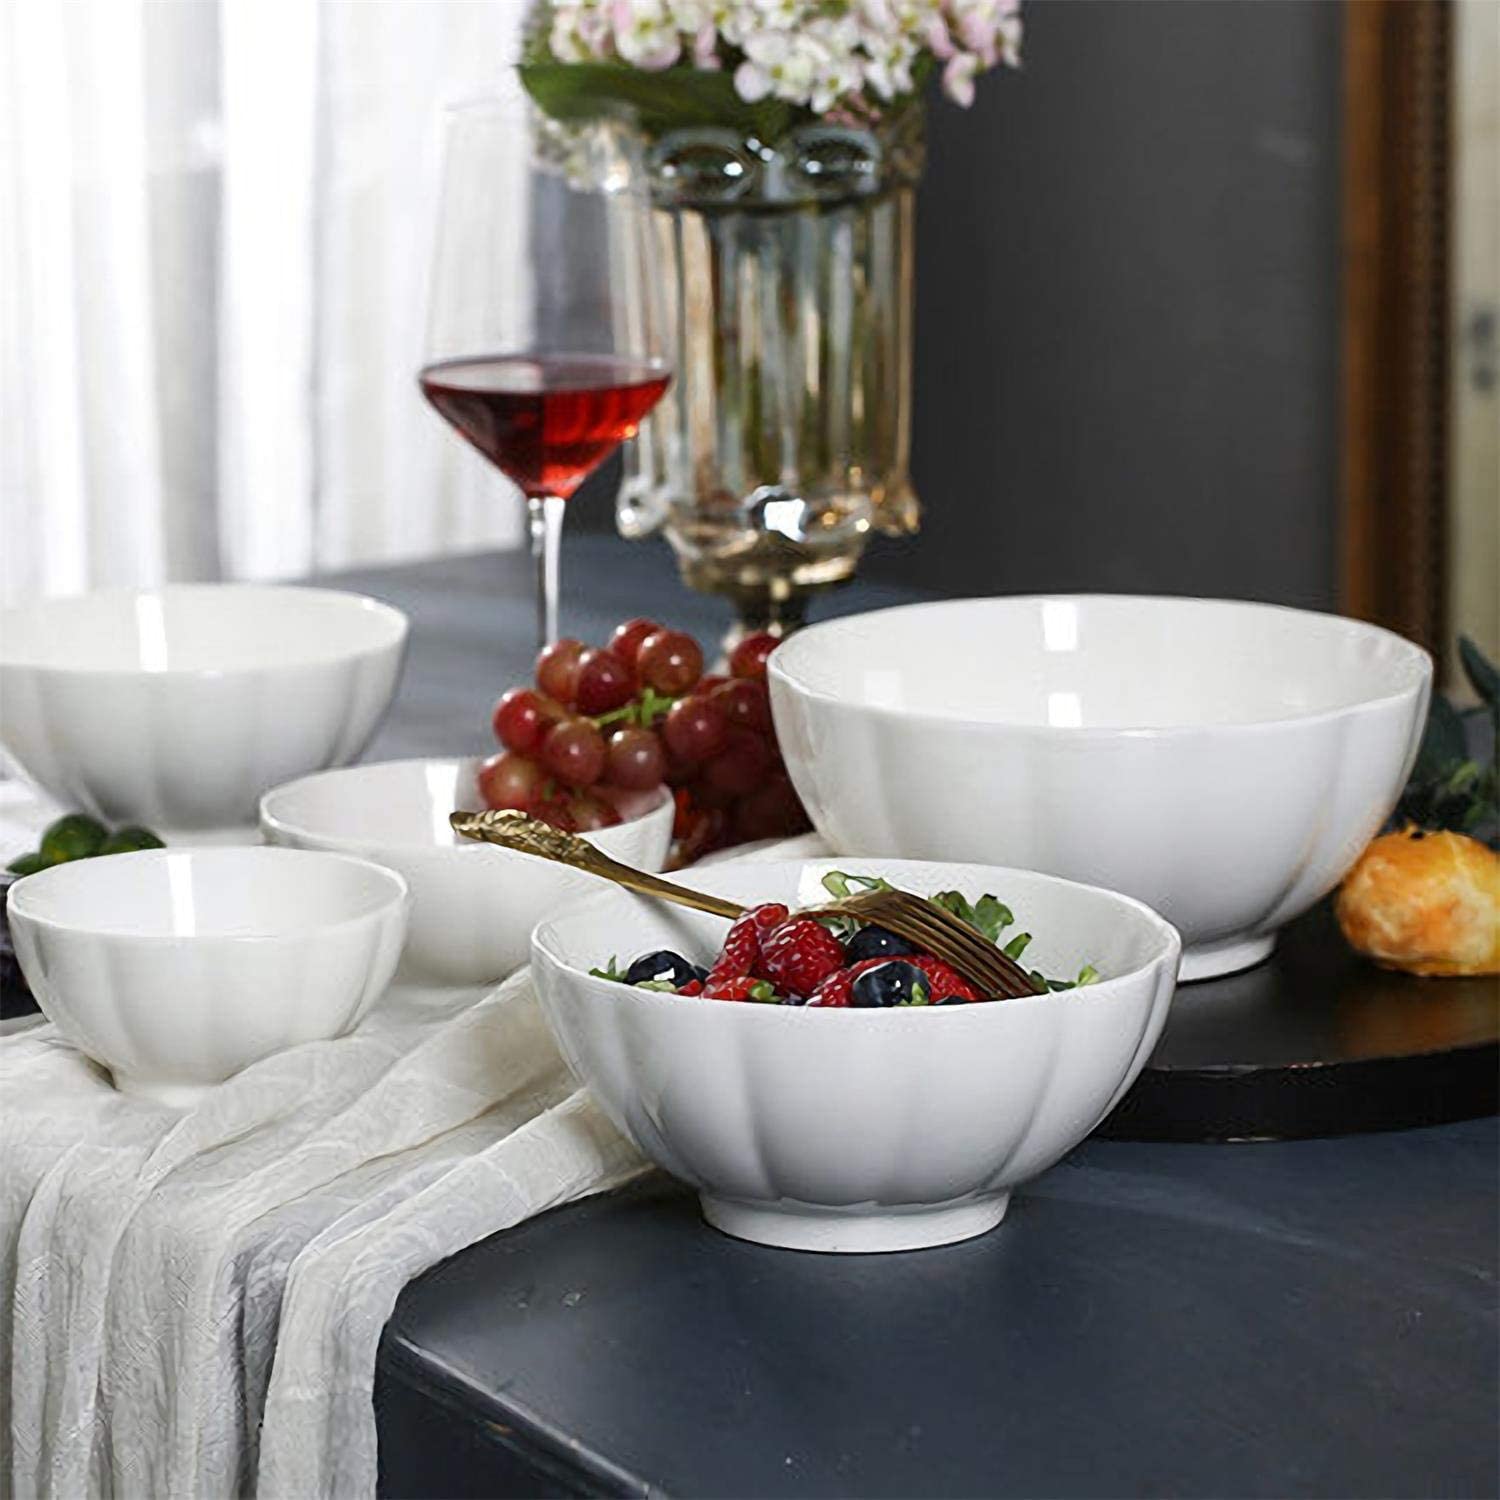 Large Serving Bowls - 60 oz Ceramic Salad Bowl - 8 Inch Serving